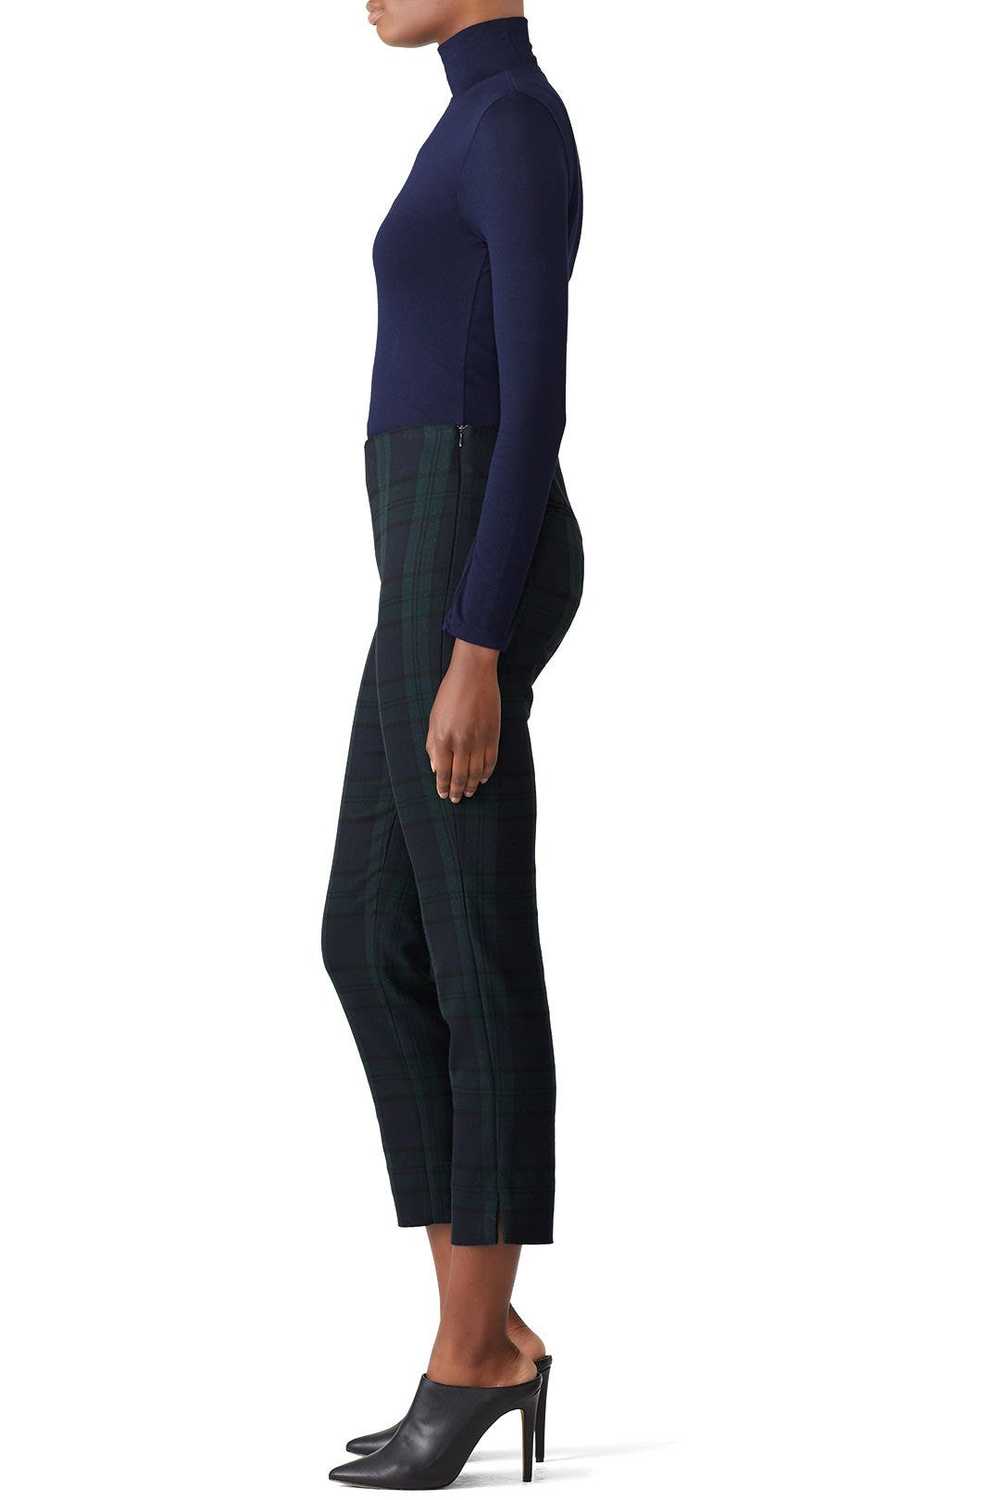 Waverly Grey Plaid Nora Pants - image 3